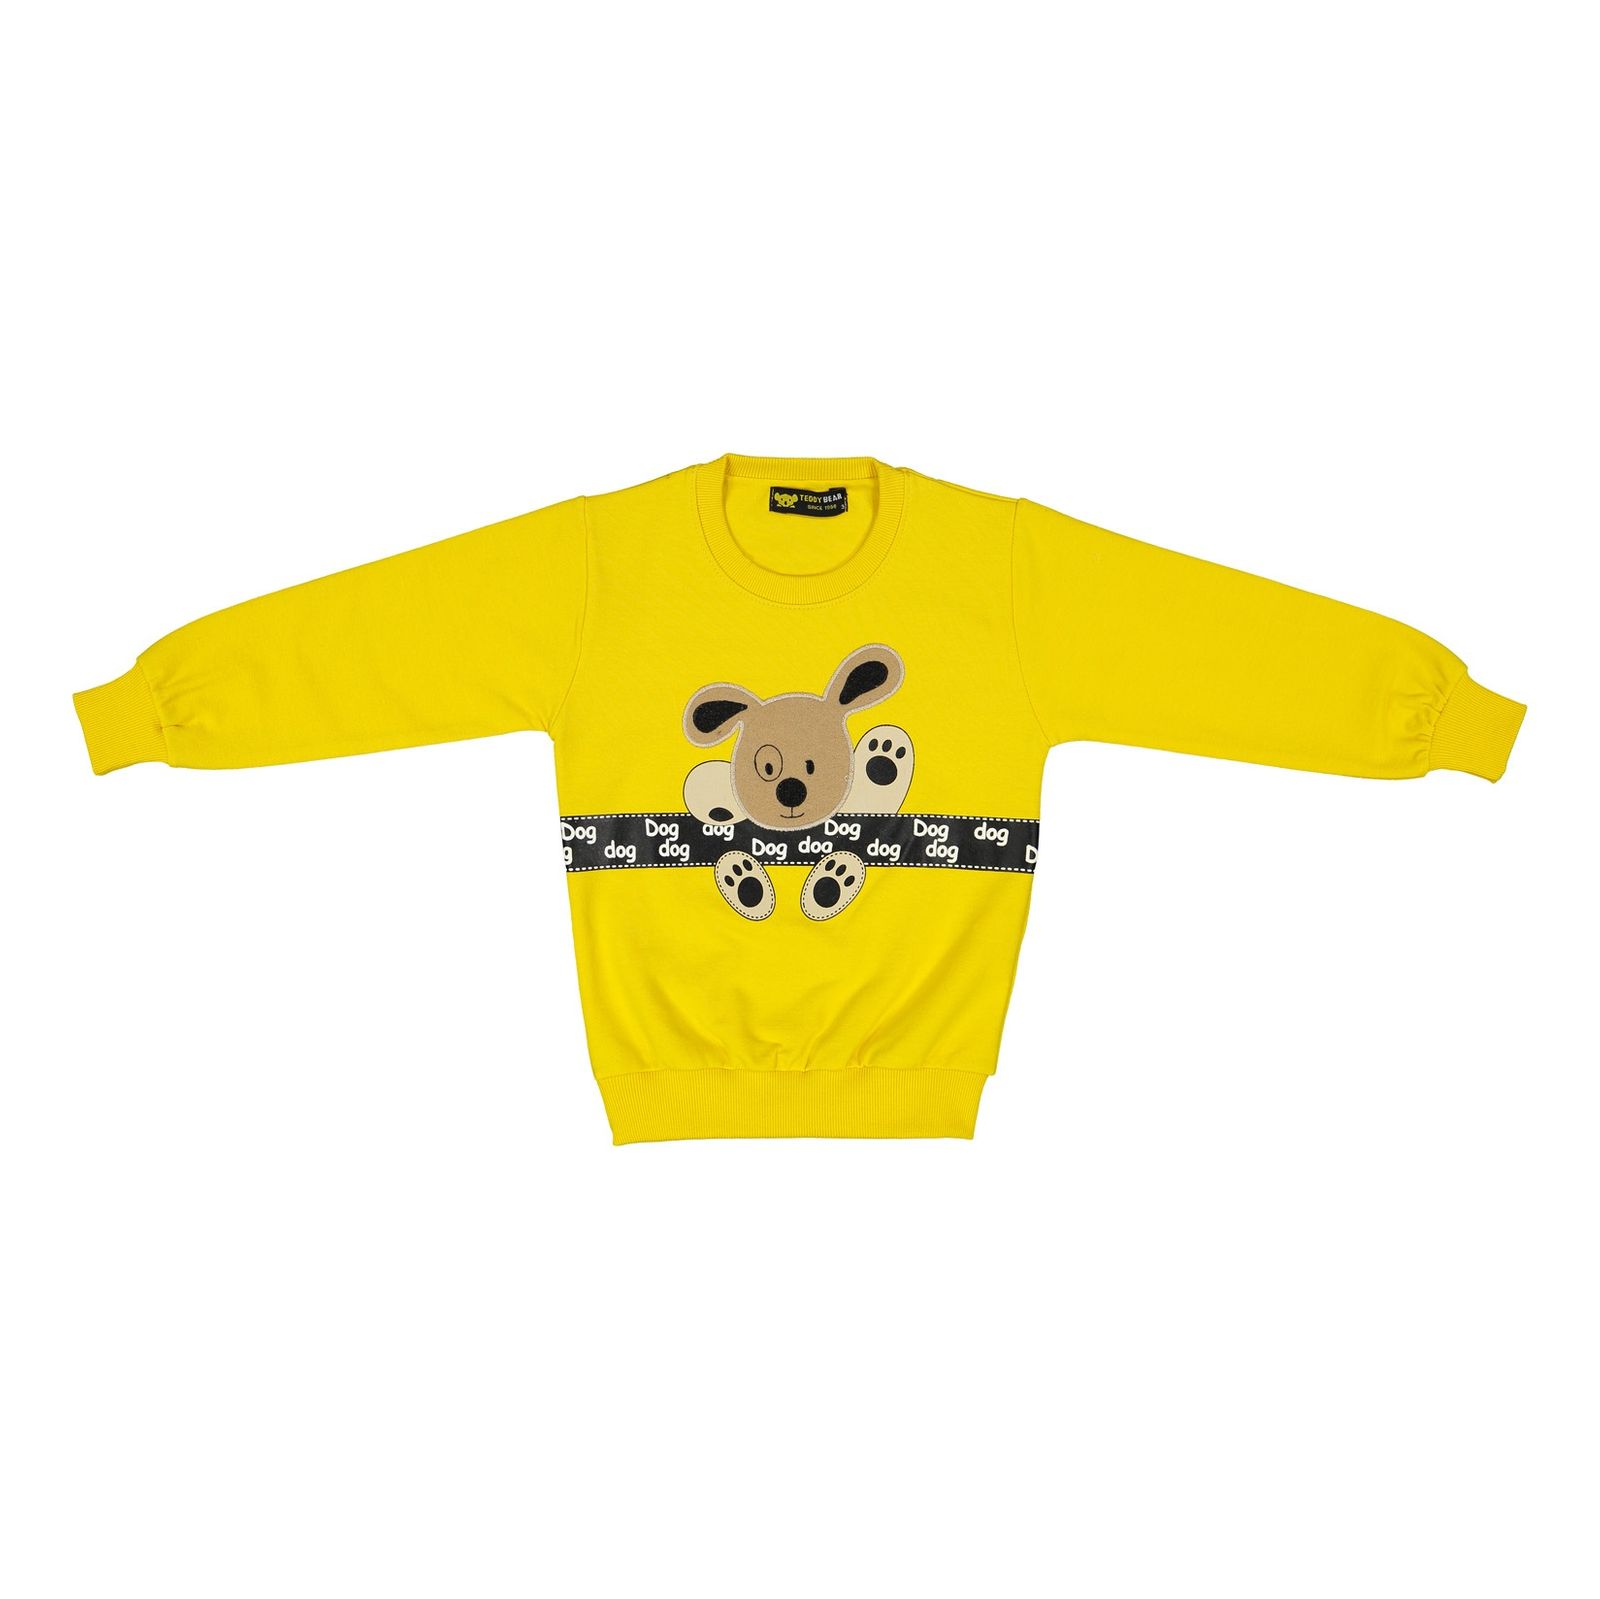 ست سویشرت و شلوار پسرانه خرس کوچولو مدل 2101105-16 - زرد - 3